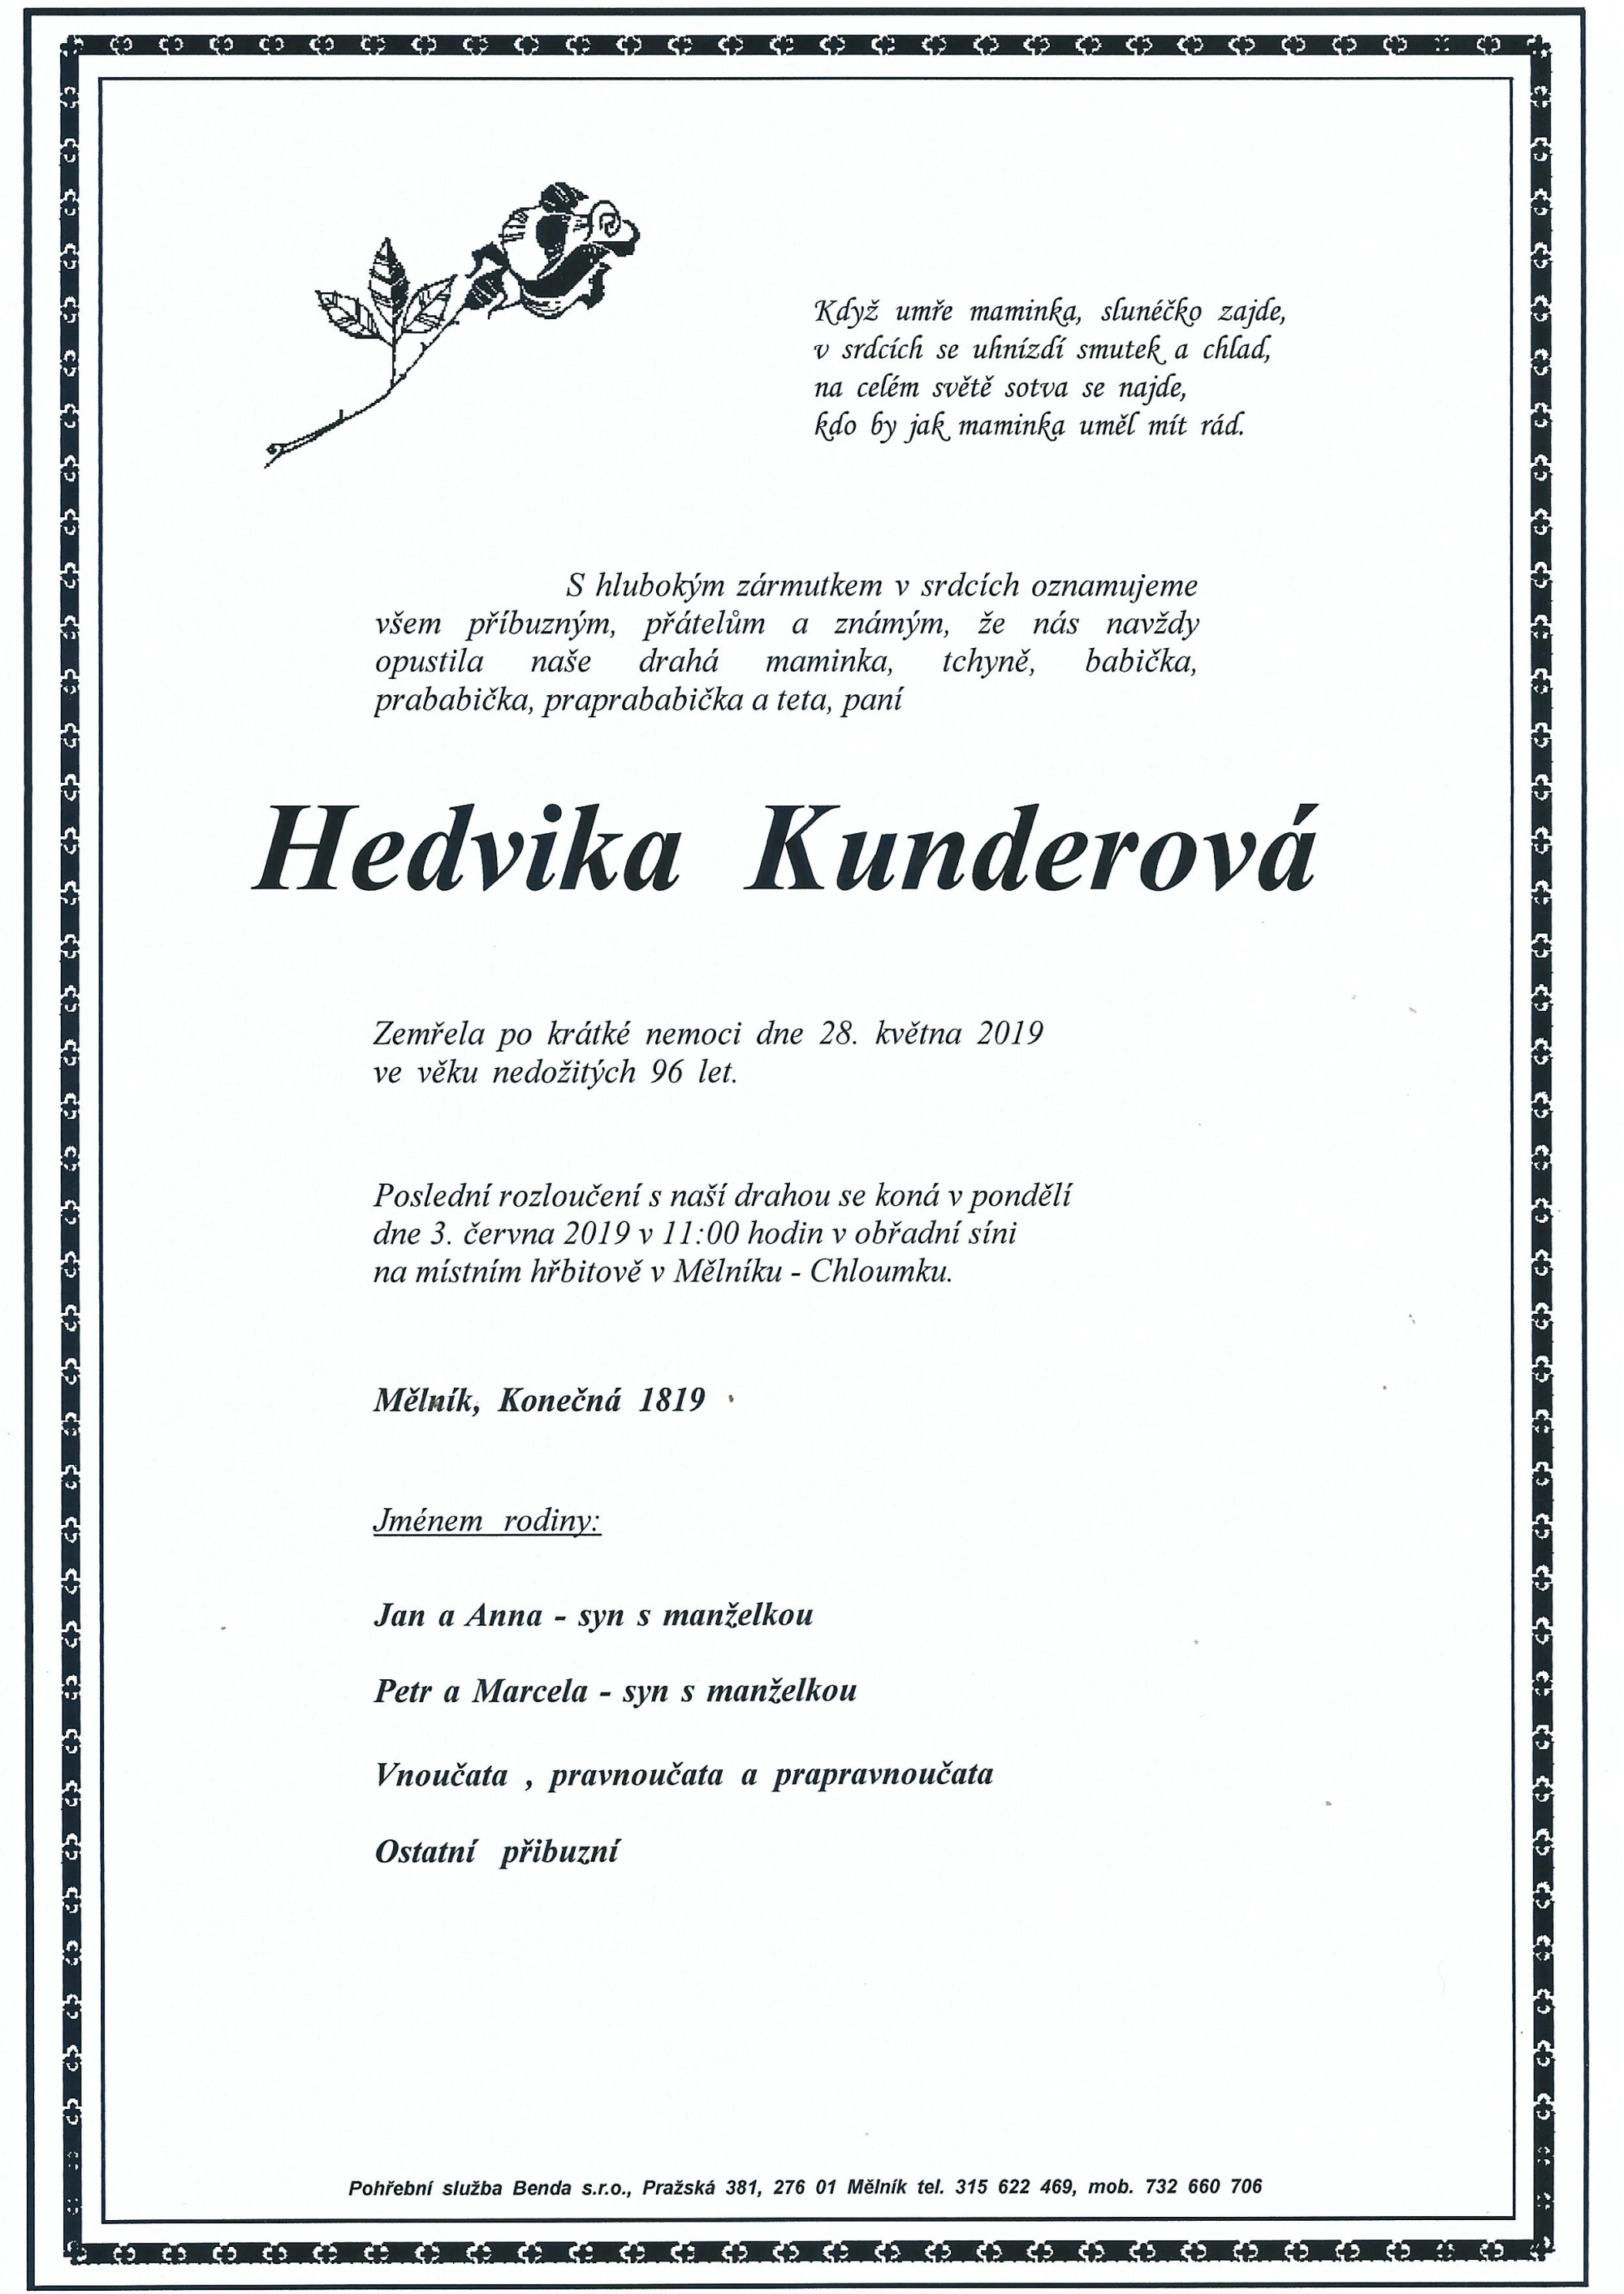 Hedvika Kunderová